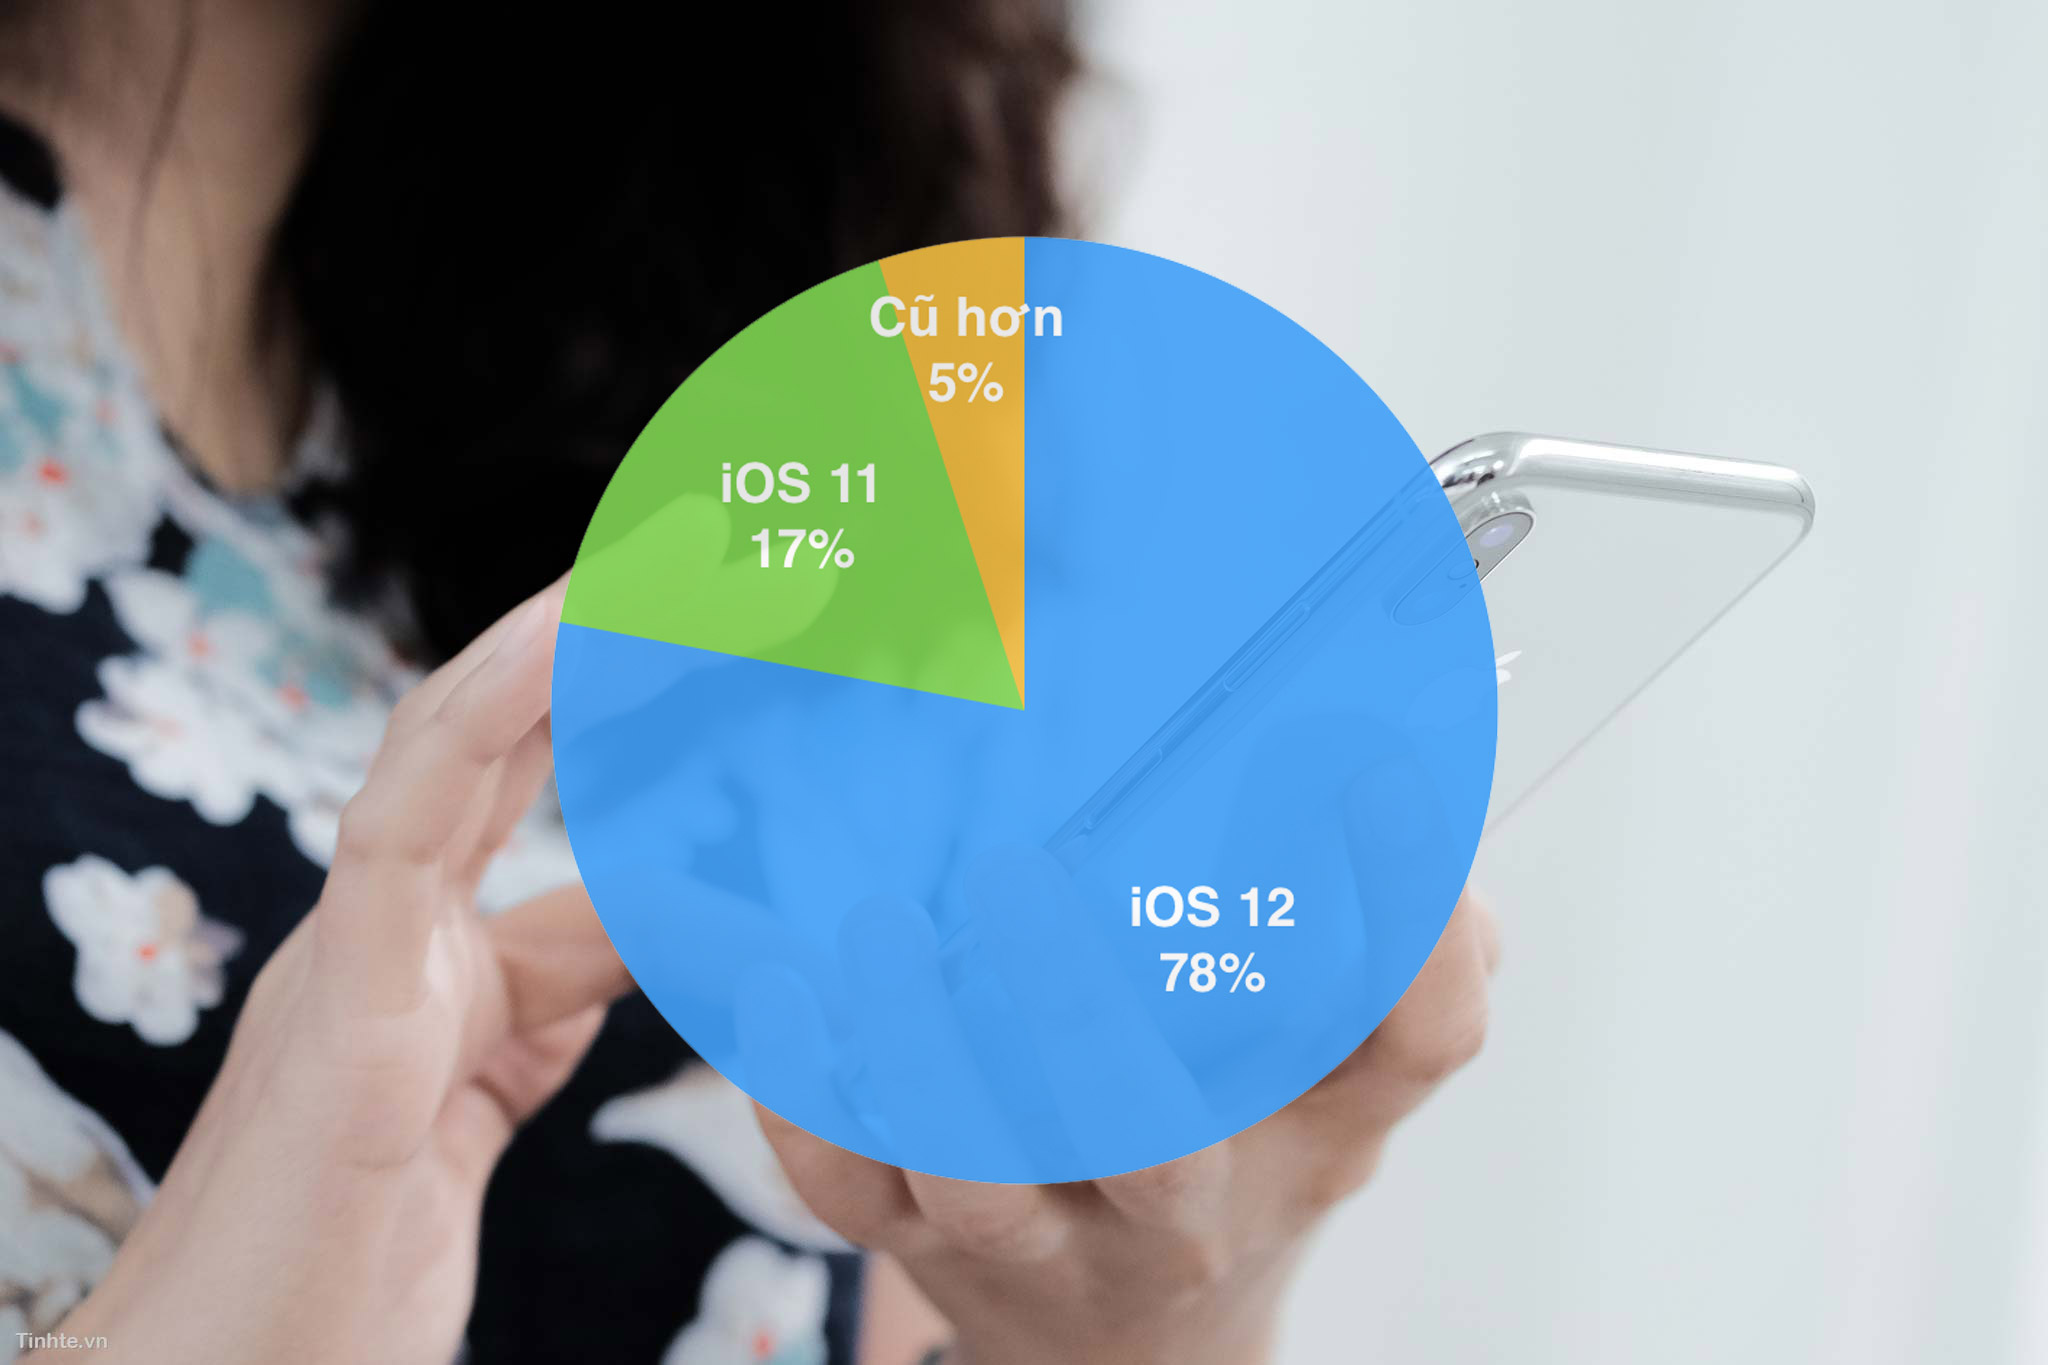 iOS 12 đang chạy trên 78% thiết bị từ iPhone 6 trở về sau, tốc độ cập nhật nhanh hơn iOS 11